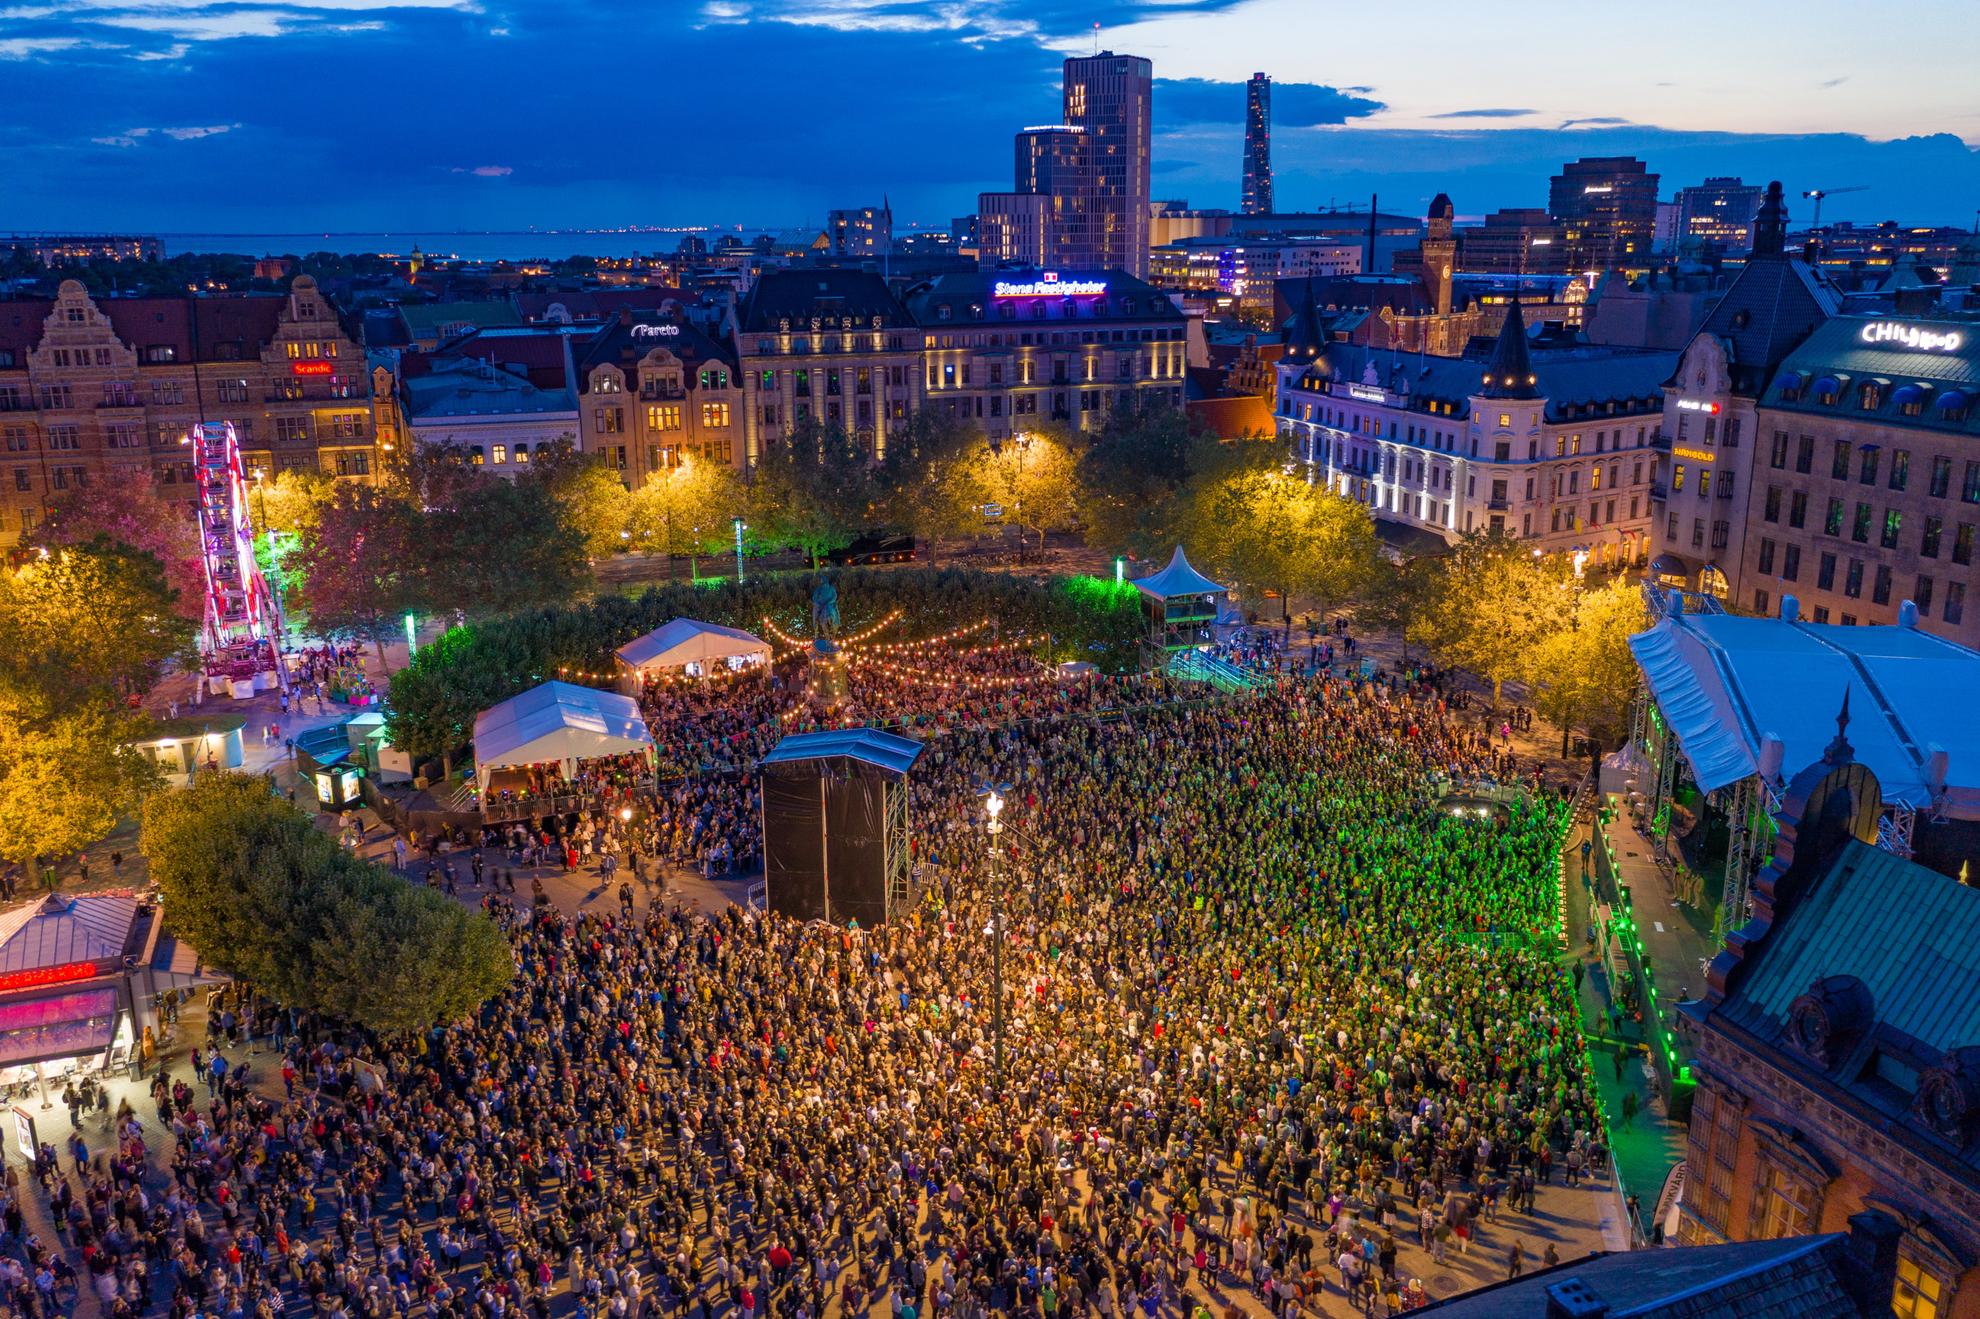 Een dronebeeld over het Malmö Festival in de avond, met duizenden bezoekers voor een groot podium.